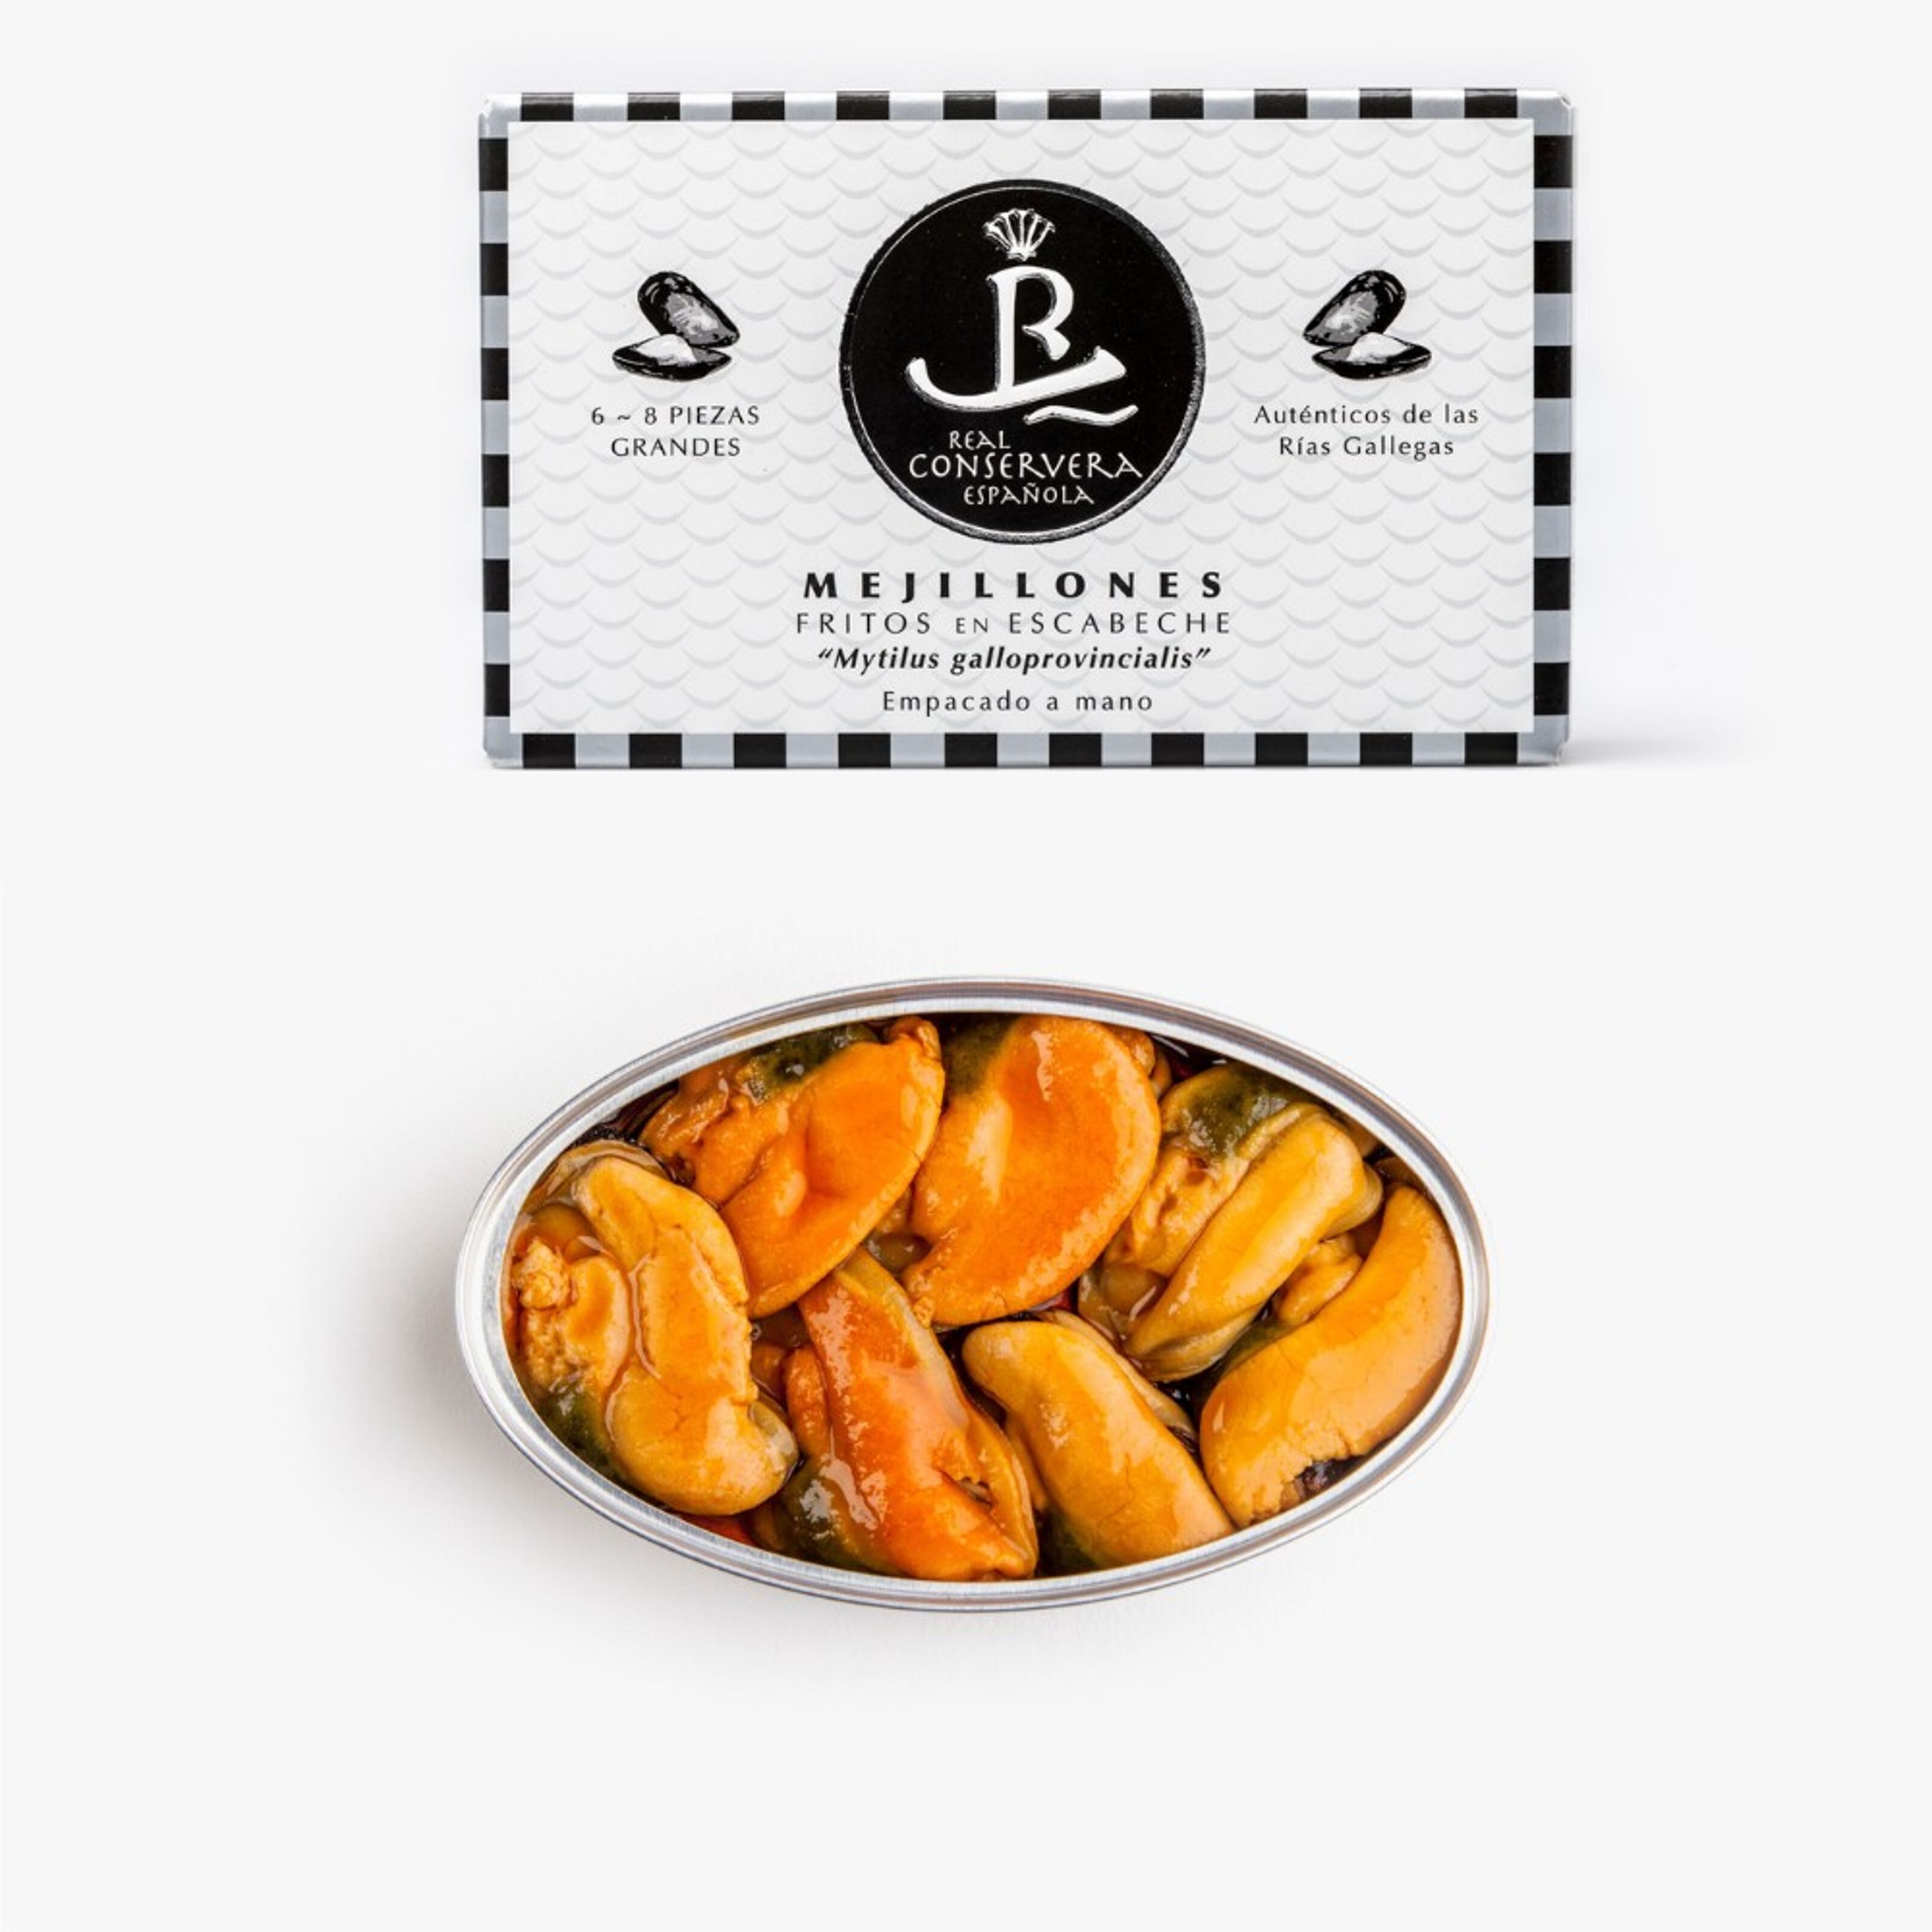 Delicias de Espana, Pickled Mussels (Mejillones en Escabeche), 3 boxes  (10-14 mussels per box)